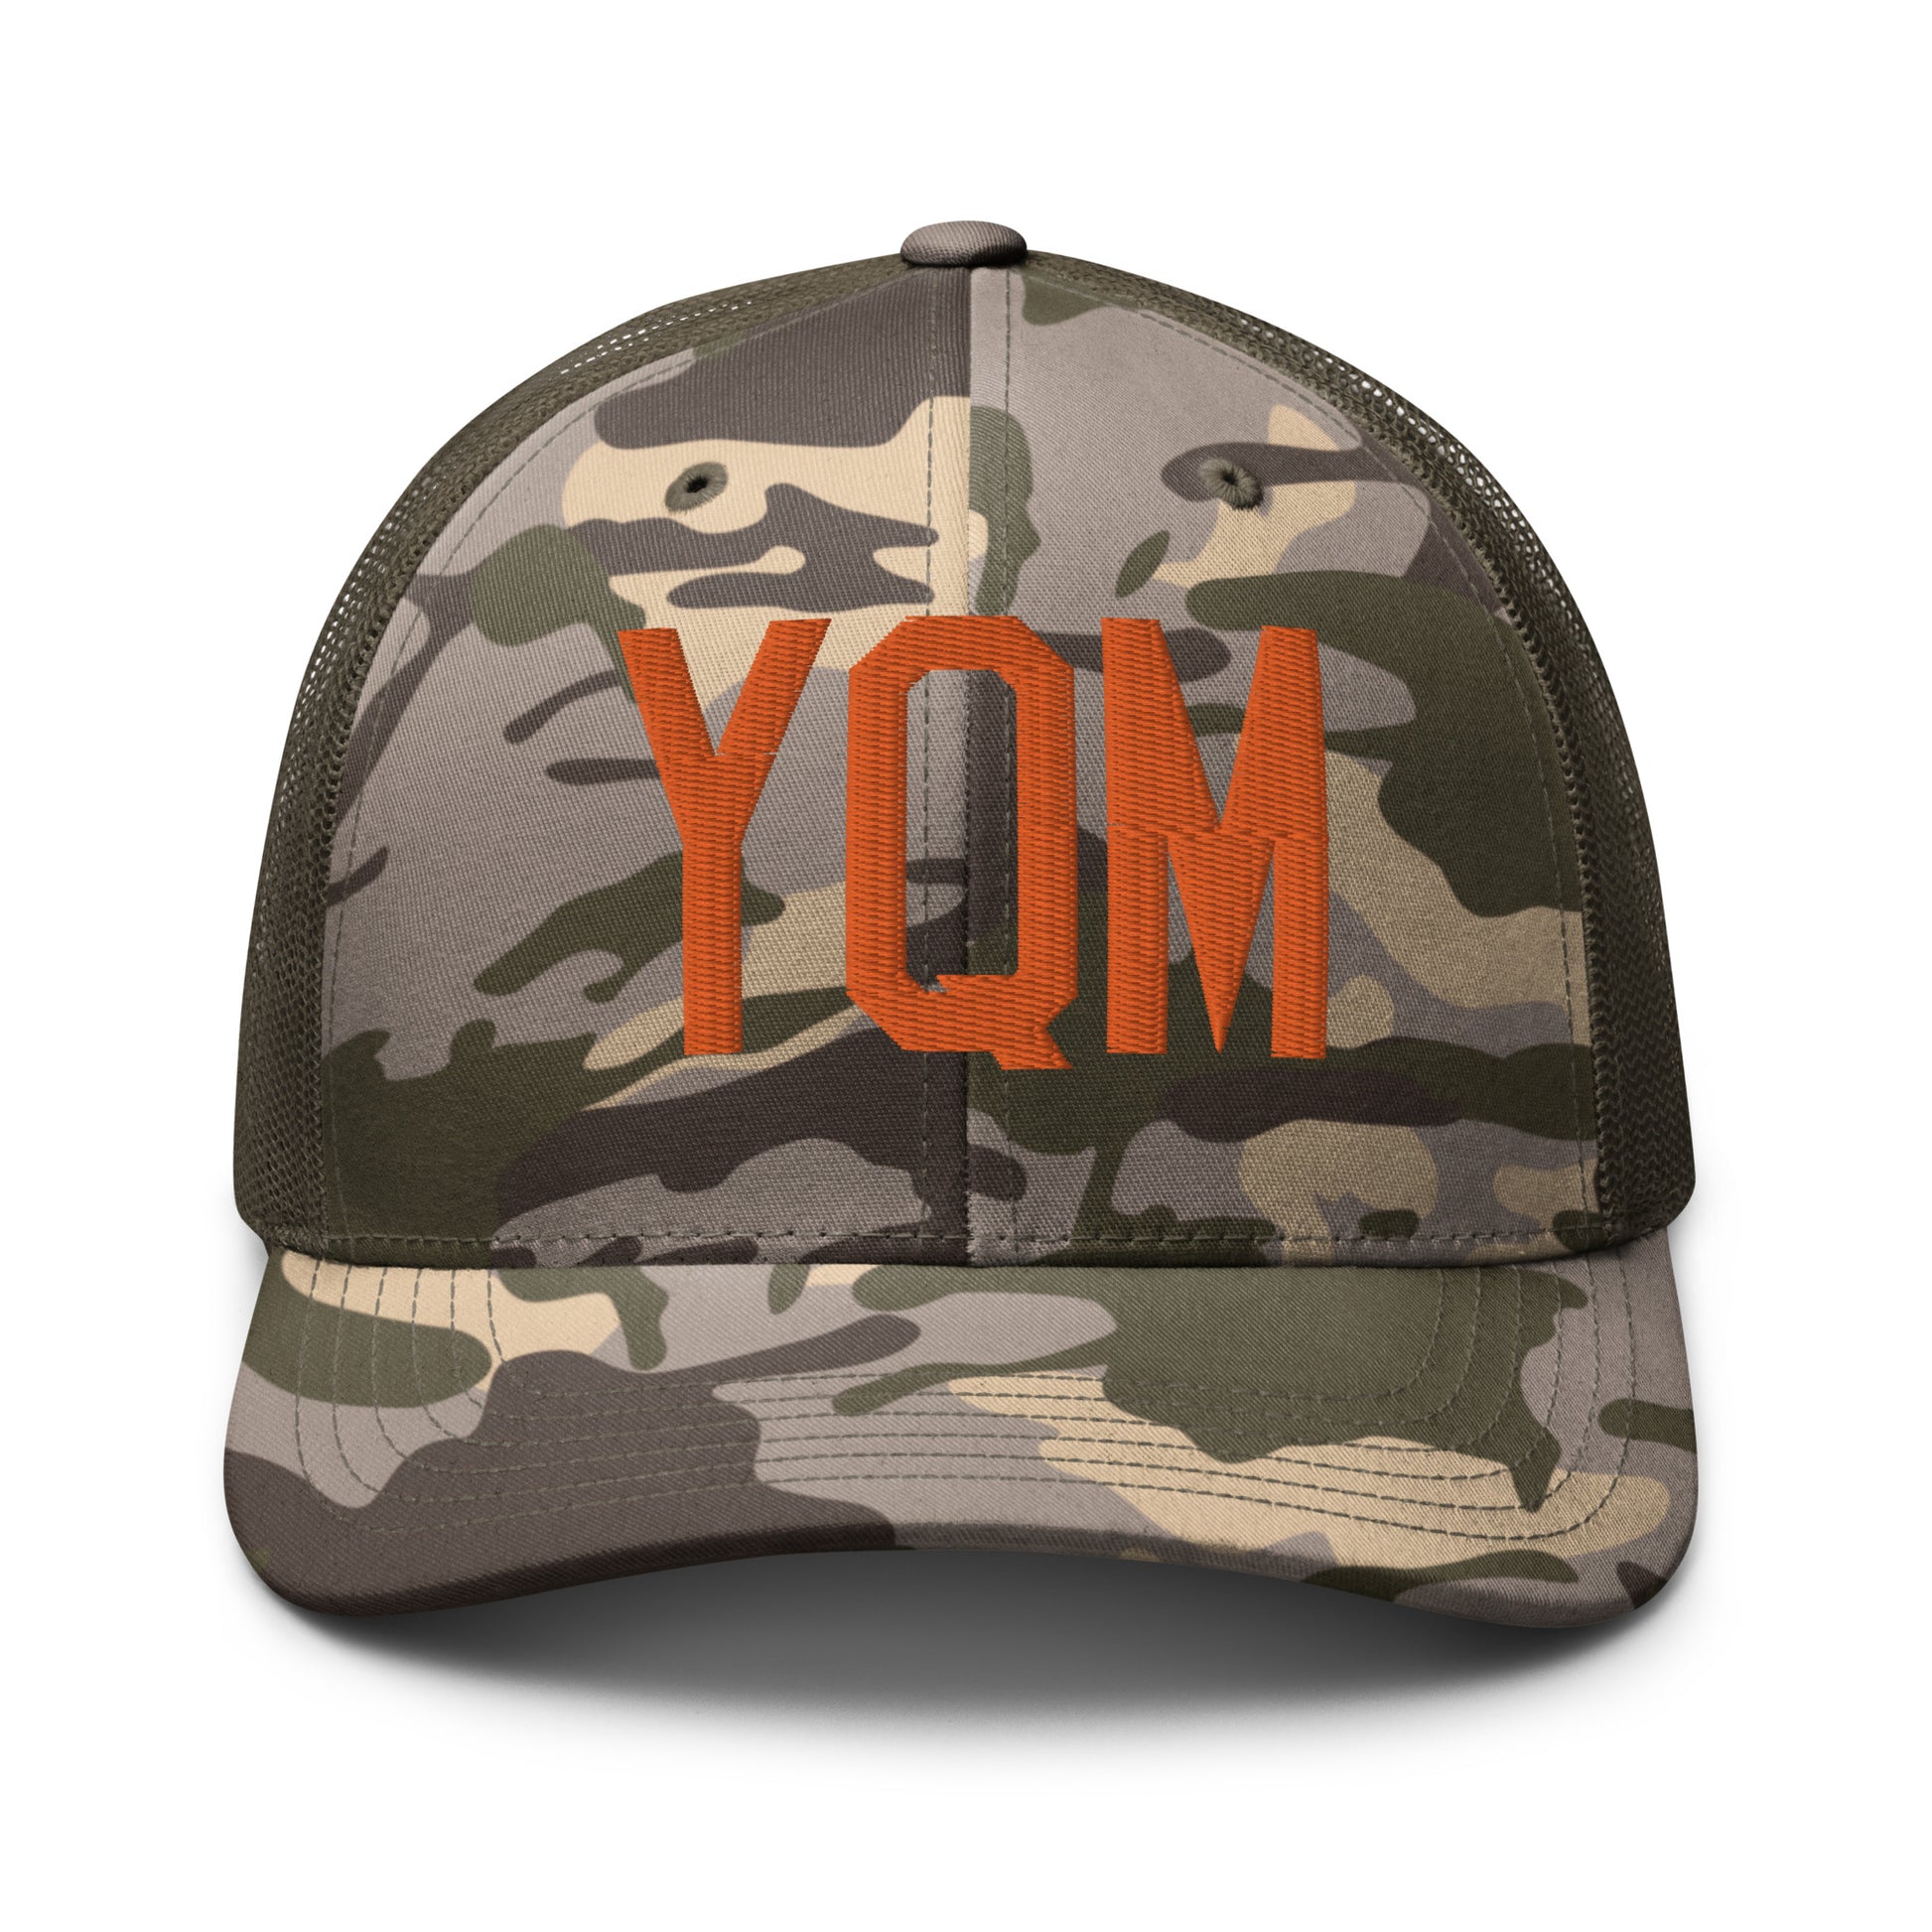 Airport Code Camouflage Trucker Hat - Orange • YQM Moncton • YHM Designs - Image 17